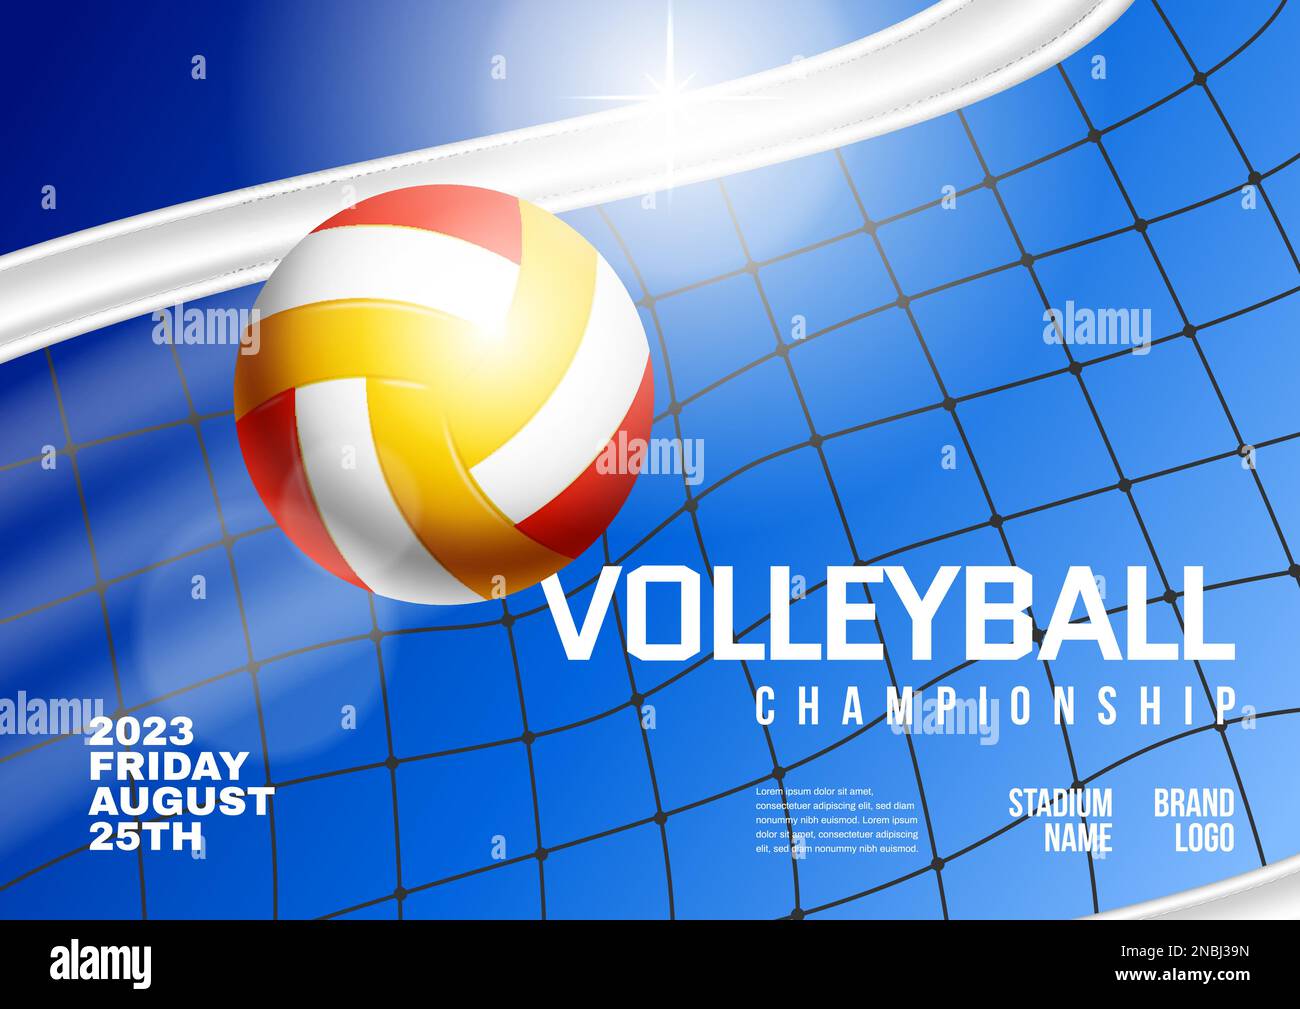 Championnat de volley affiche horizontale réaliste avec balle et filet sur fond bleu illustration vectorielle Illustration de Vecteur